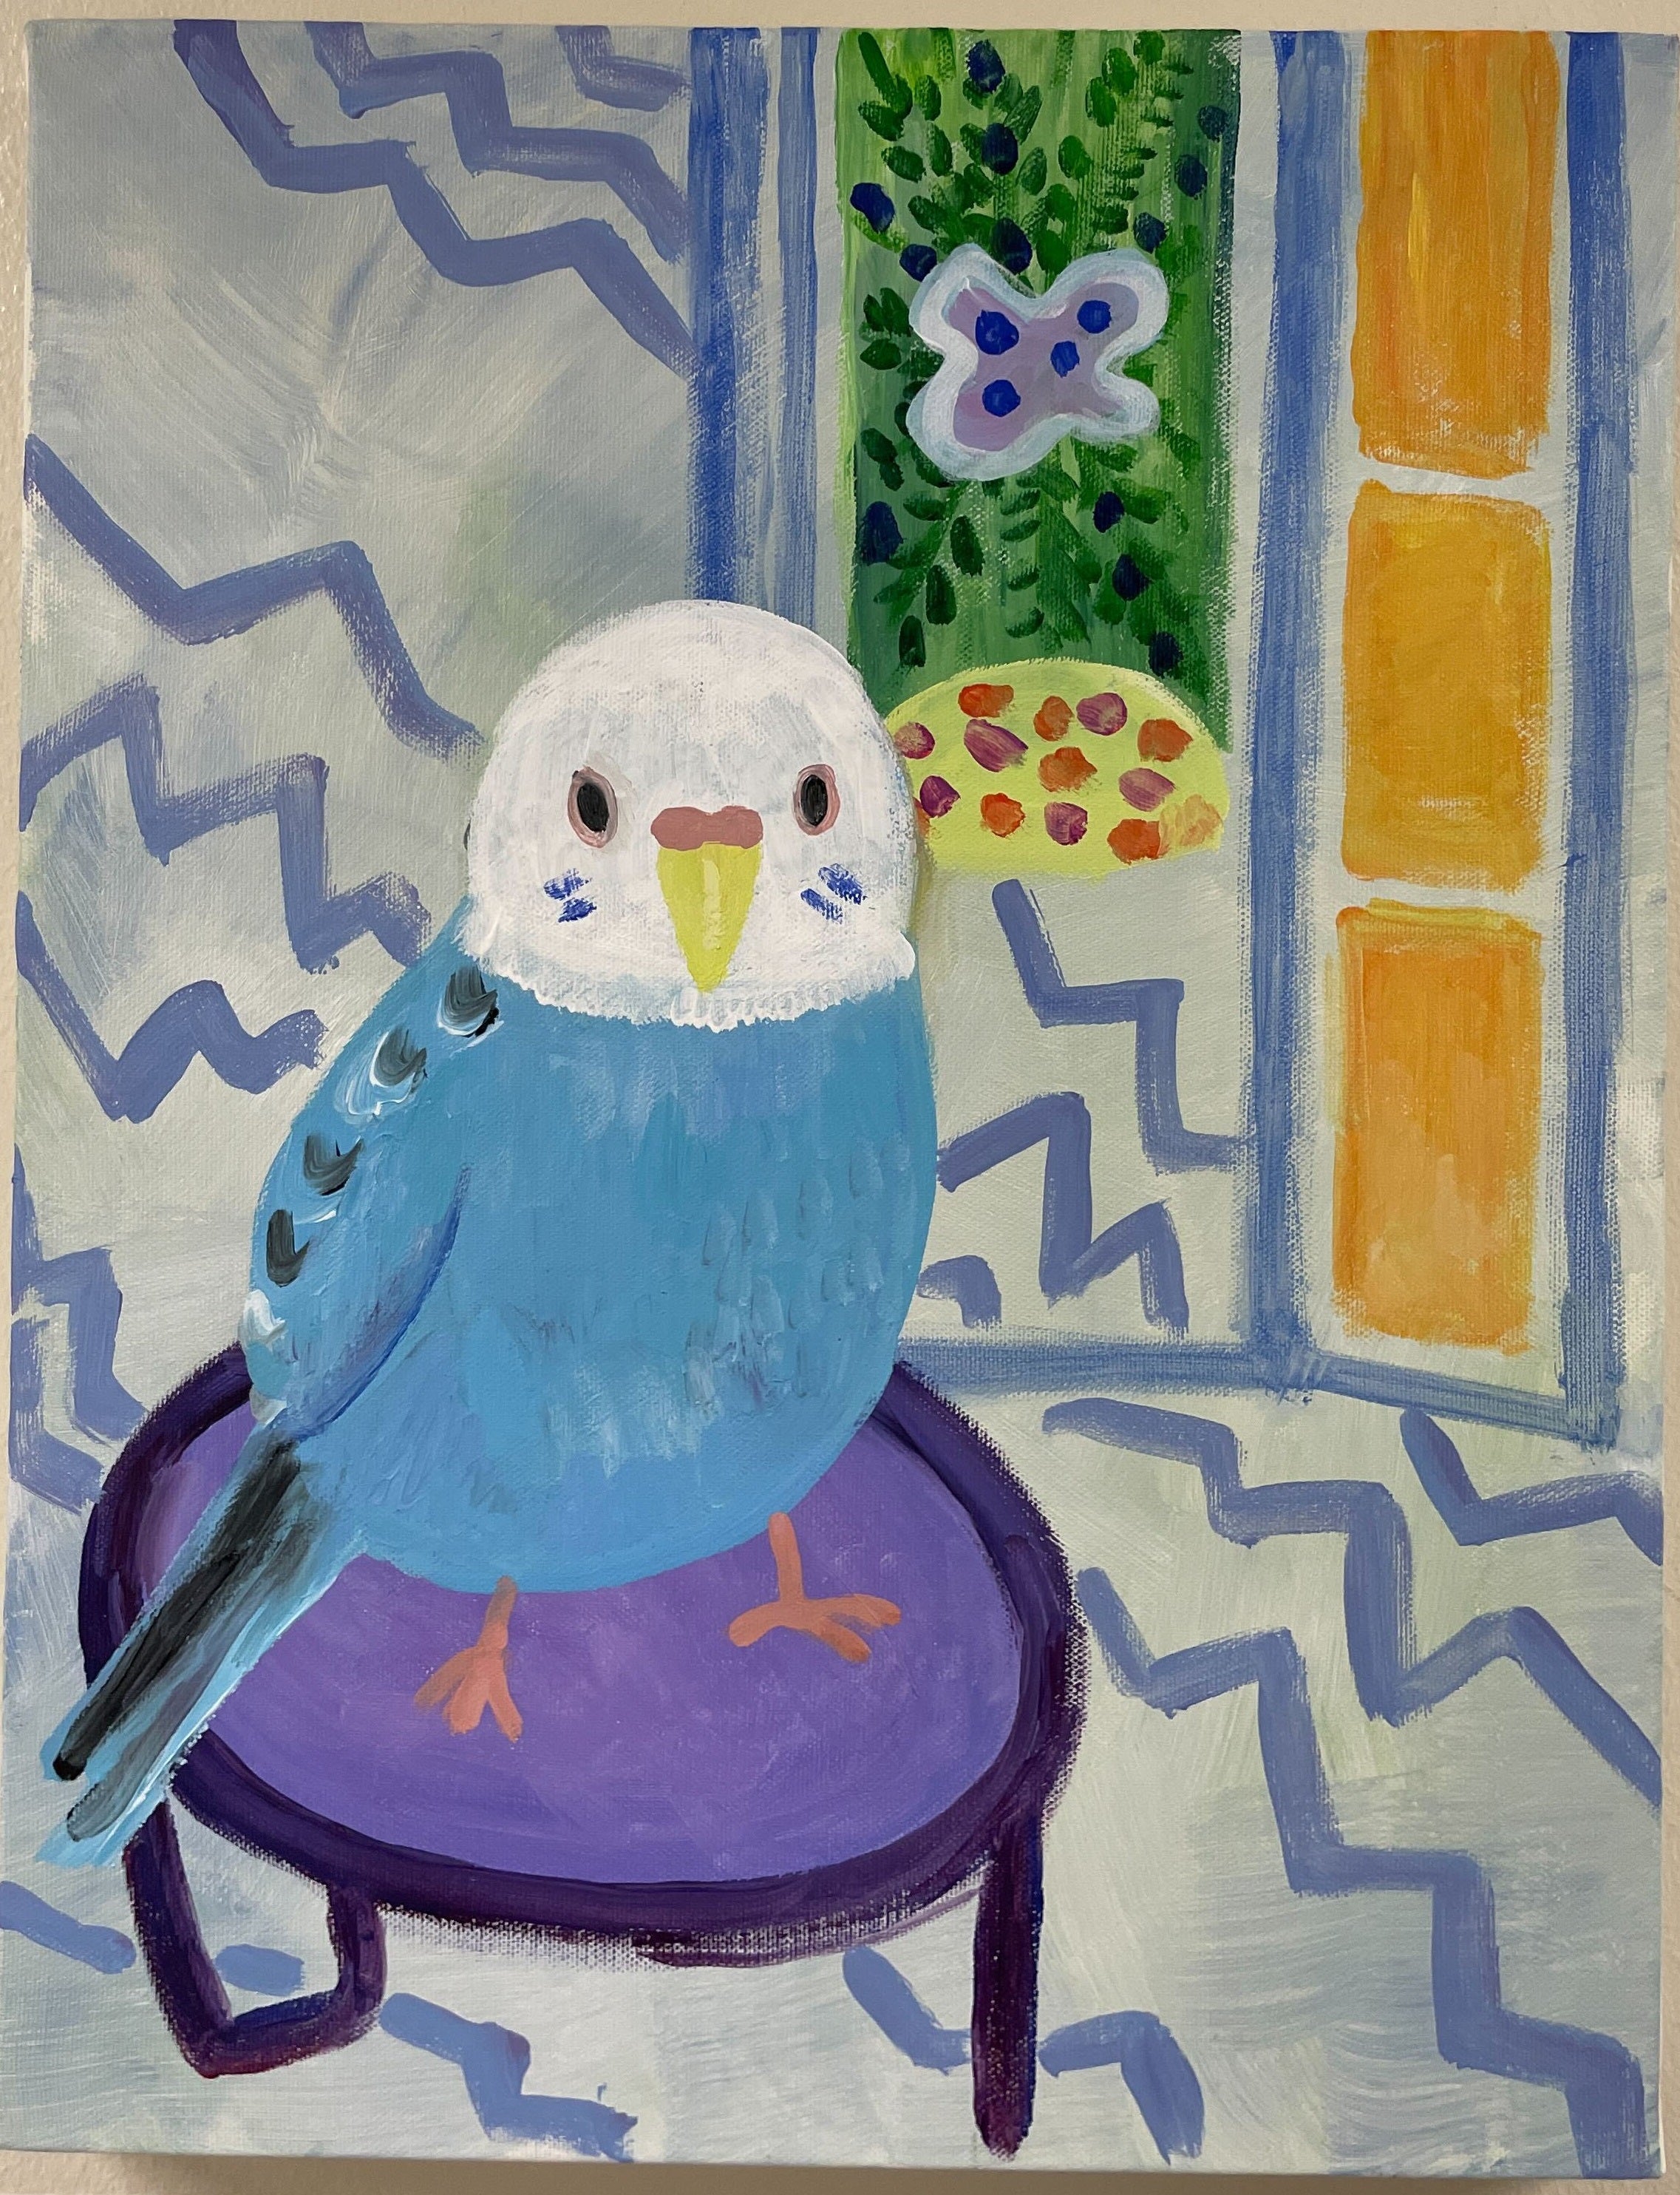 【日本橋】3月22日 (金) 19:00-22:00 | マティス風 | 猫の絵 (Matisse-Style Animal Painting at Nihon-bashi)